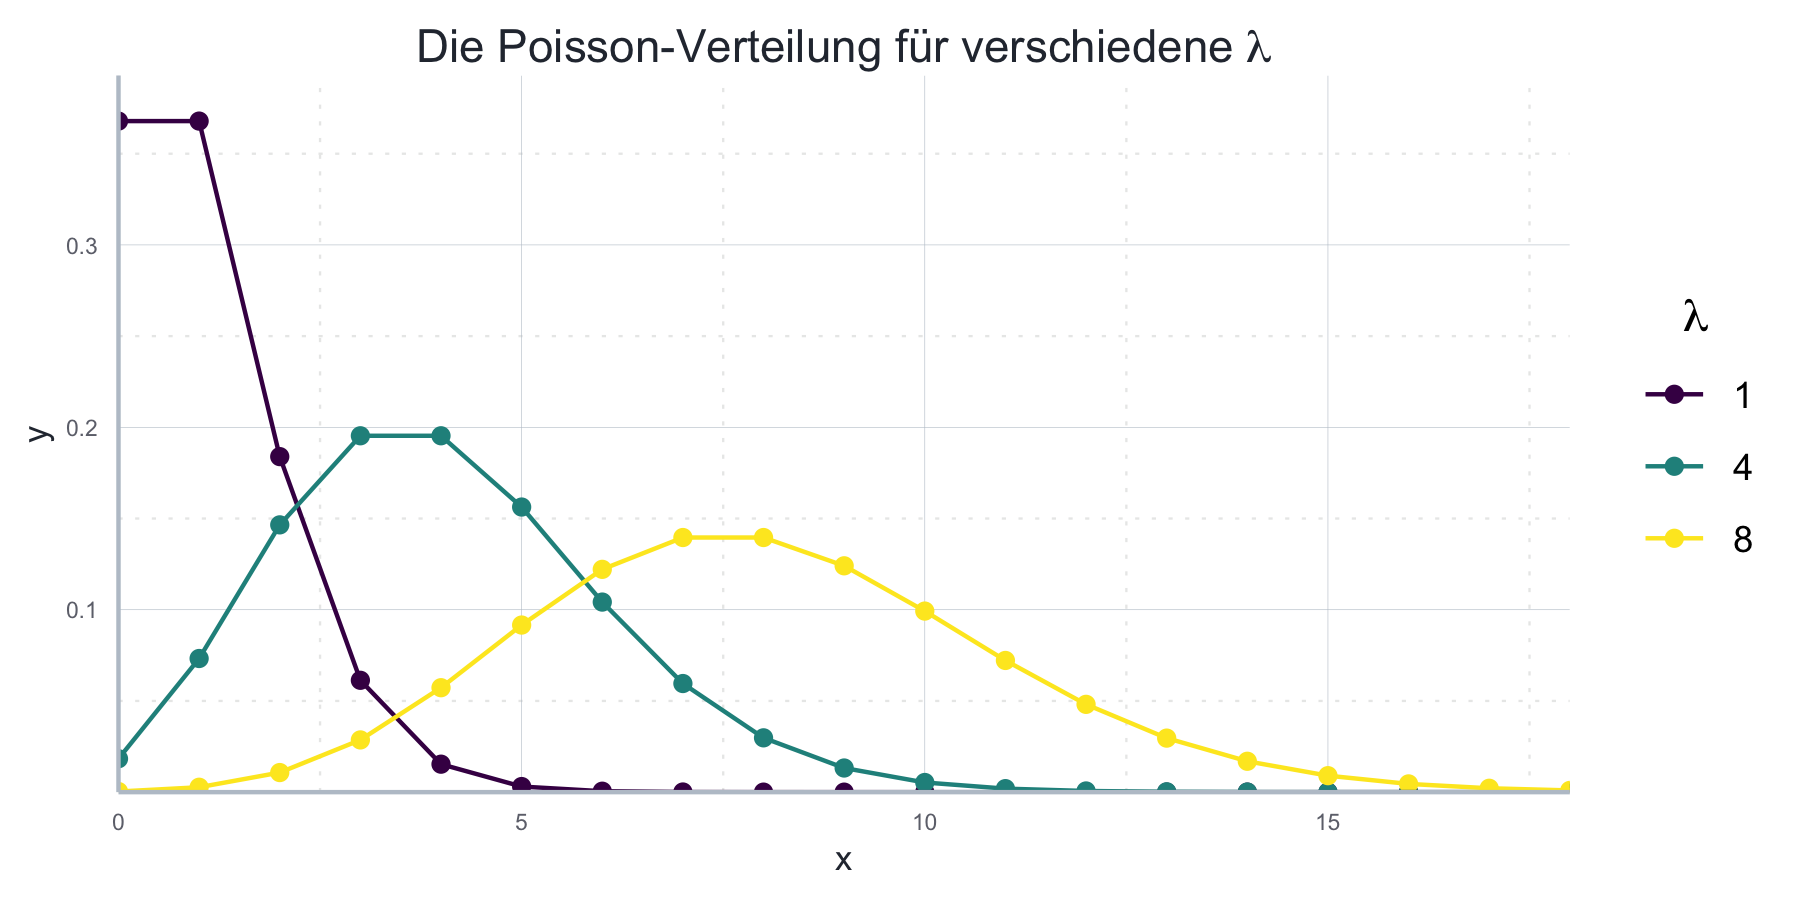 Poisson-Verteilung für verschiedene Parameter.